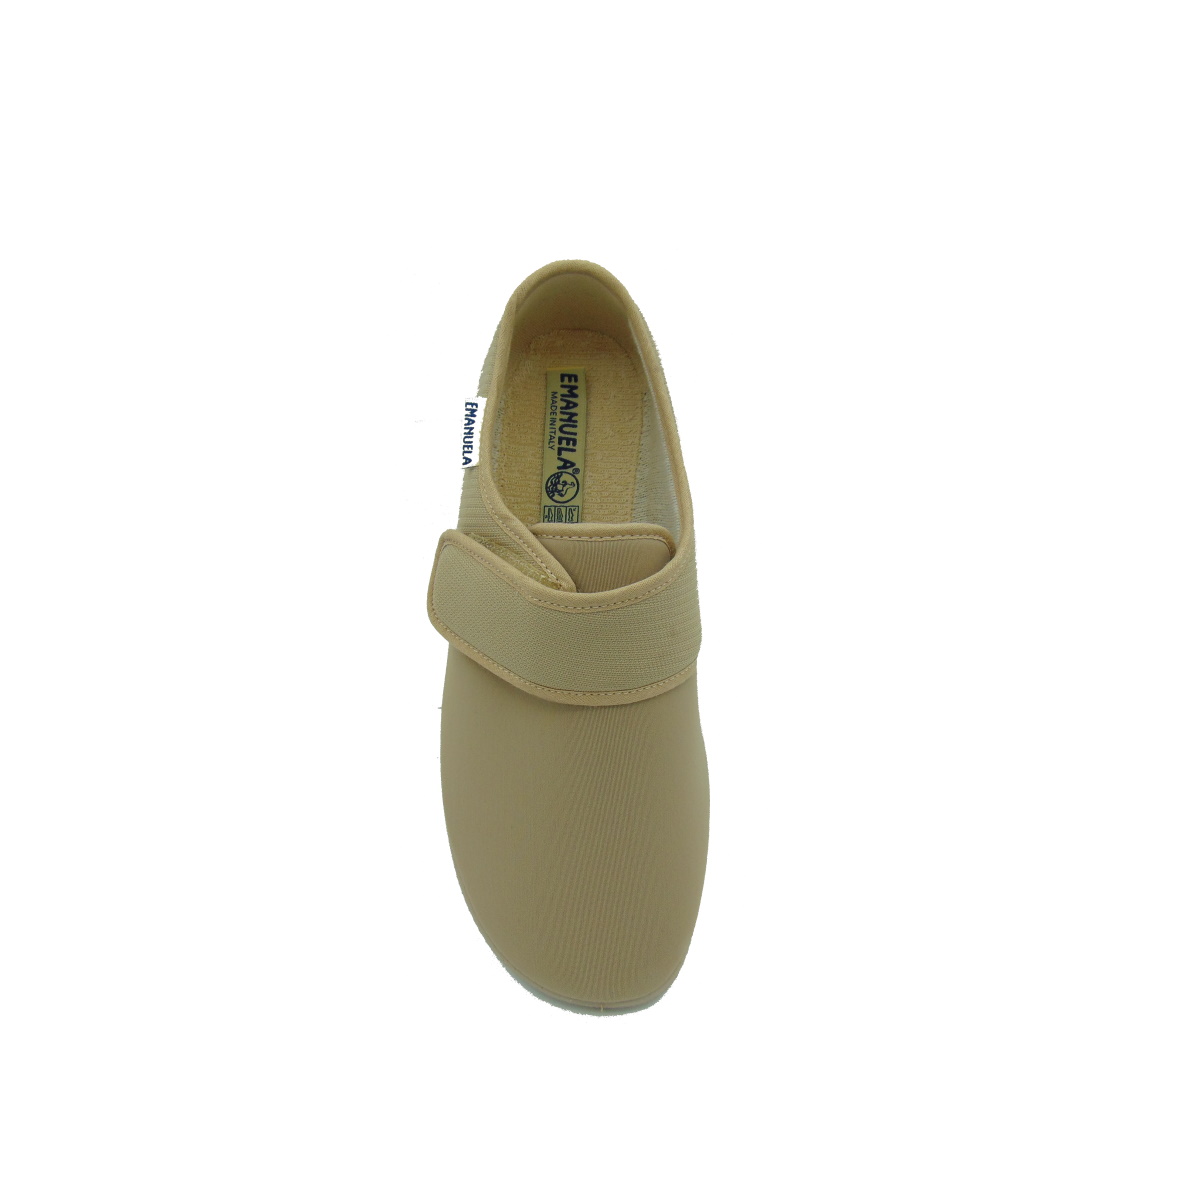 Pantofola Uomo elasticizzata con strappo Emanuela 986 beige (versione estiva)